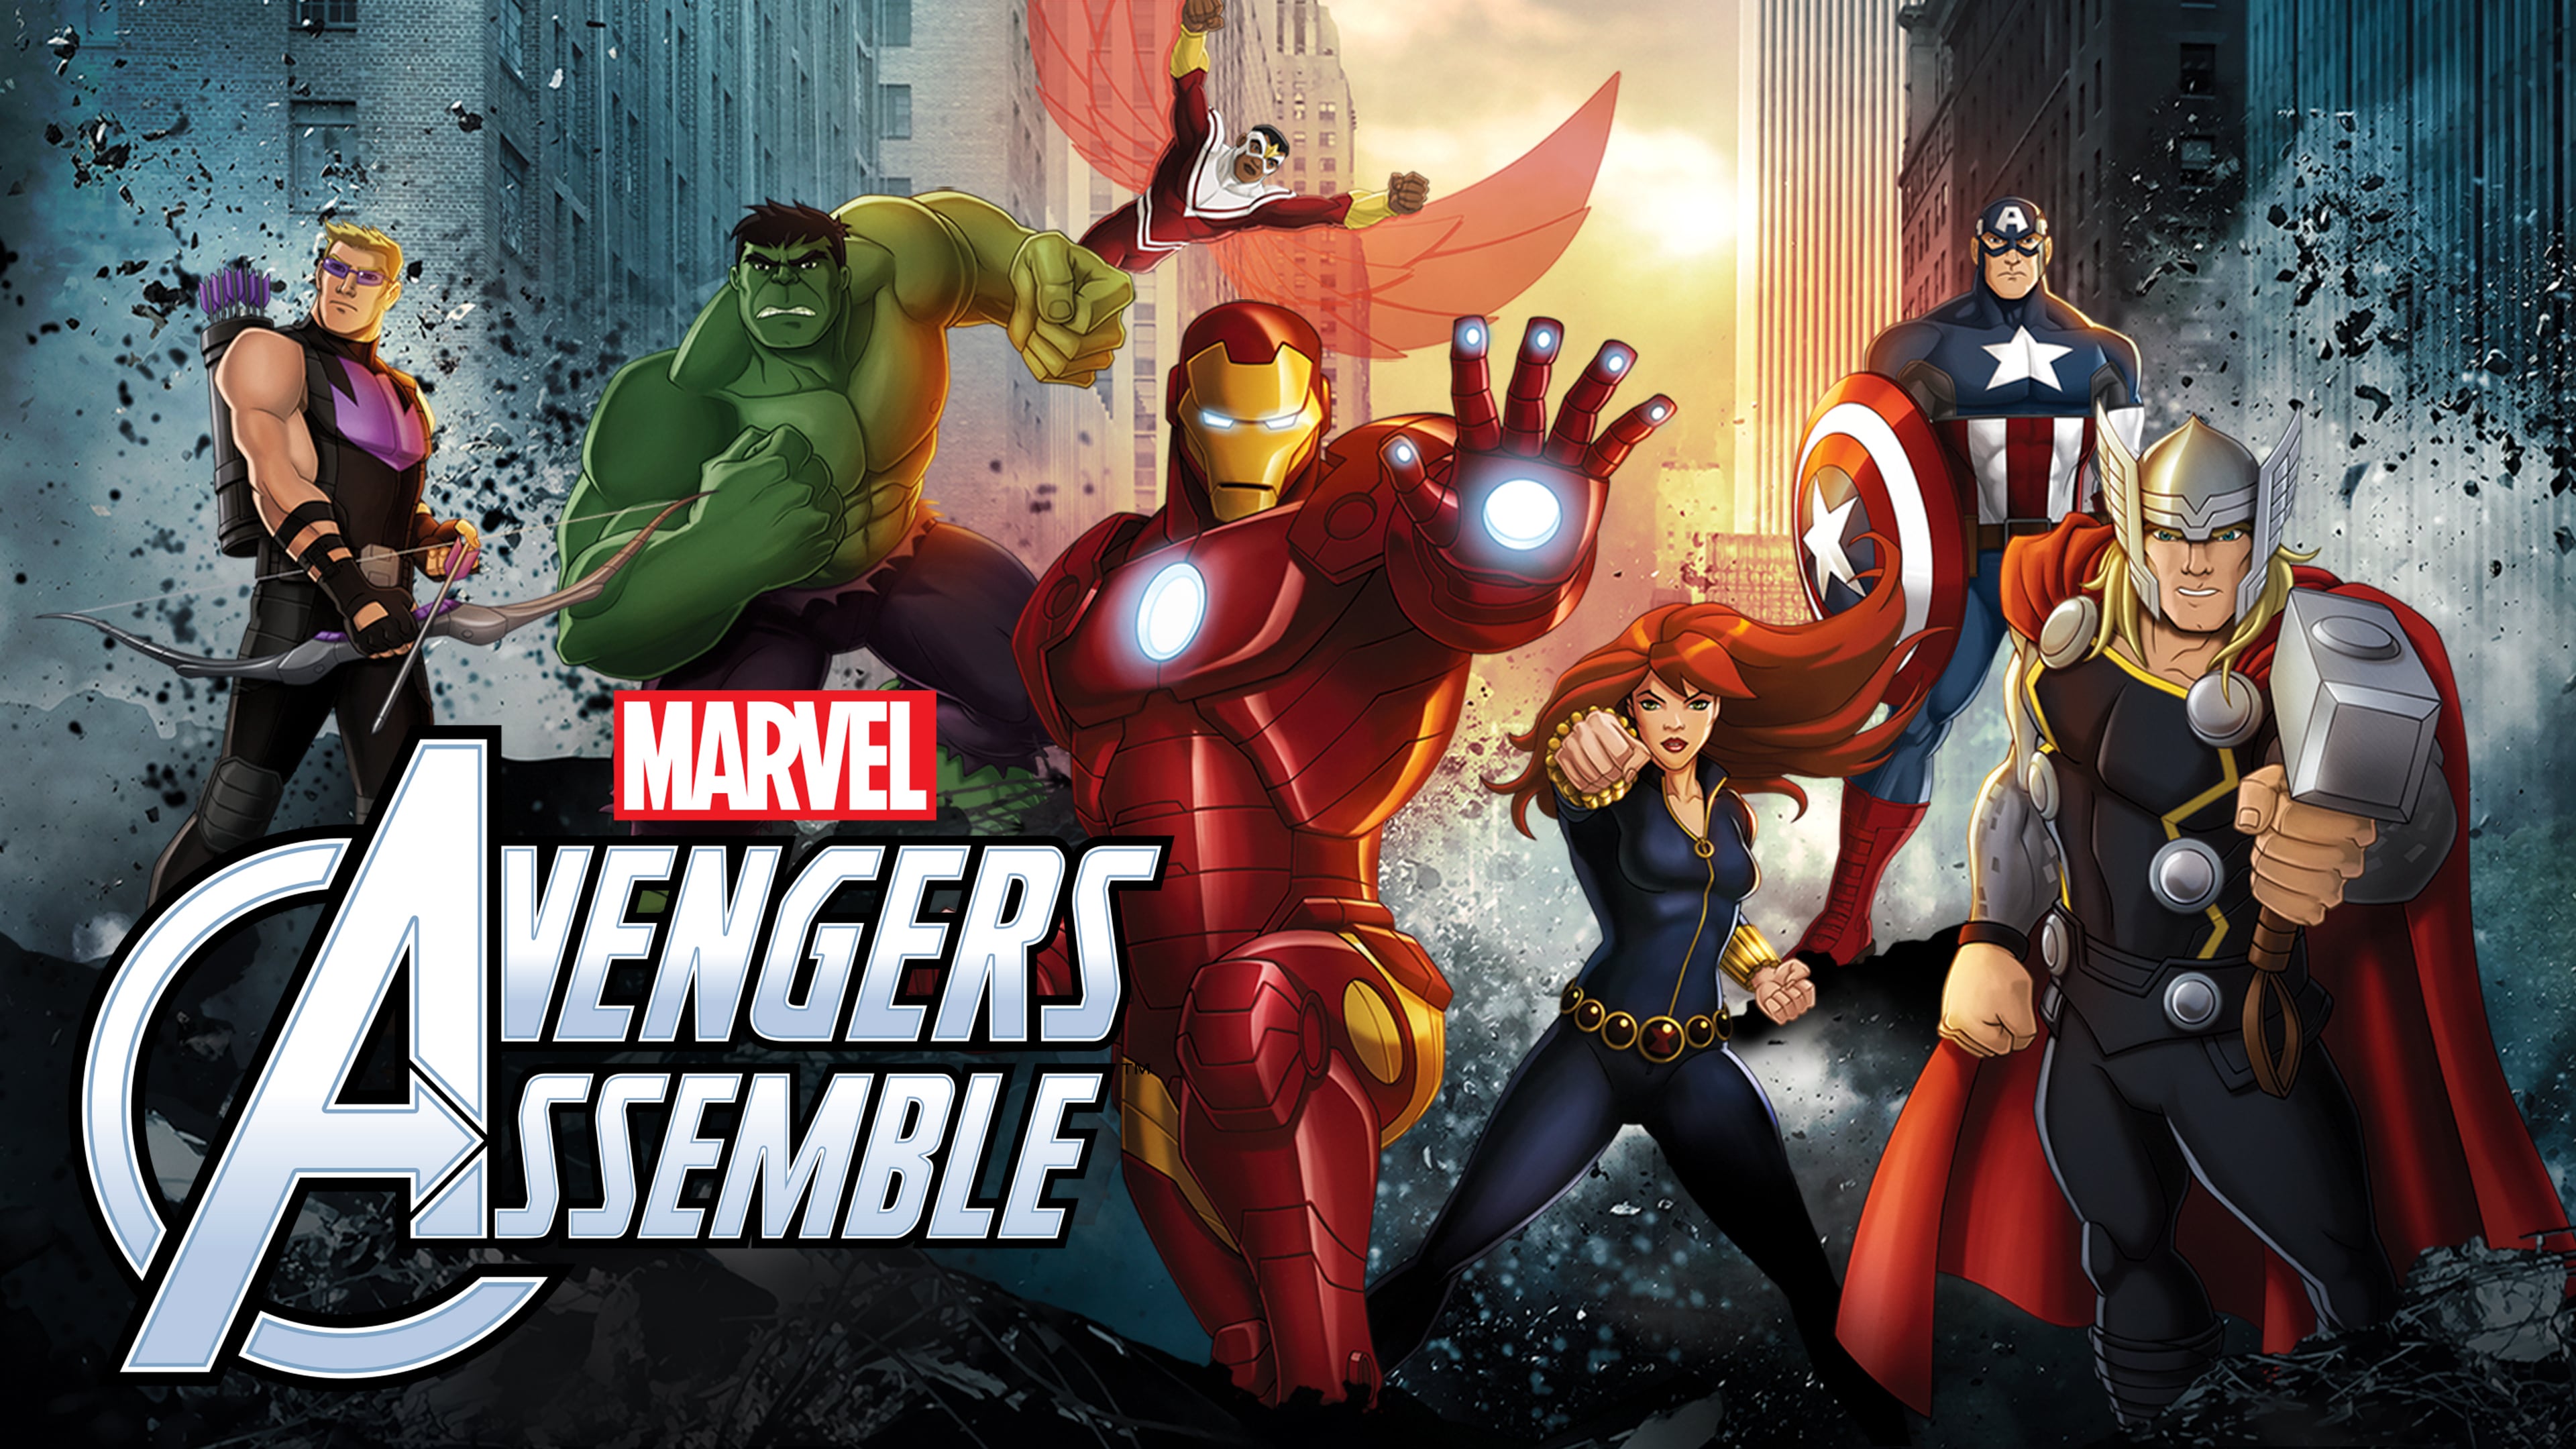 Marvel's Avengers Assemble 4k Ultra HD Wallpaper